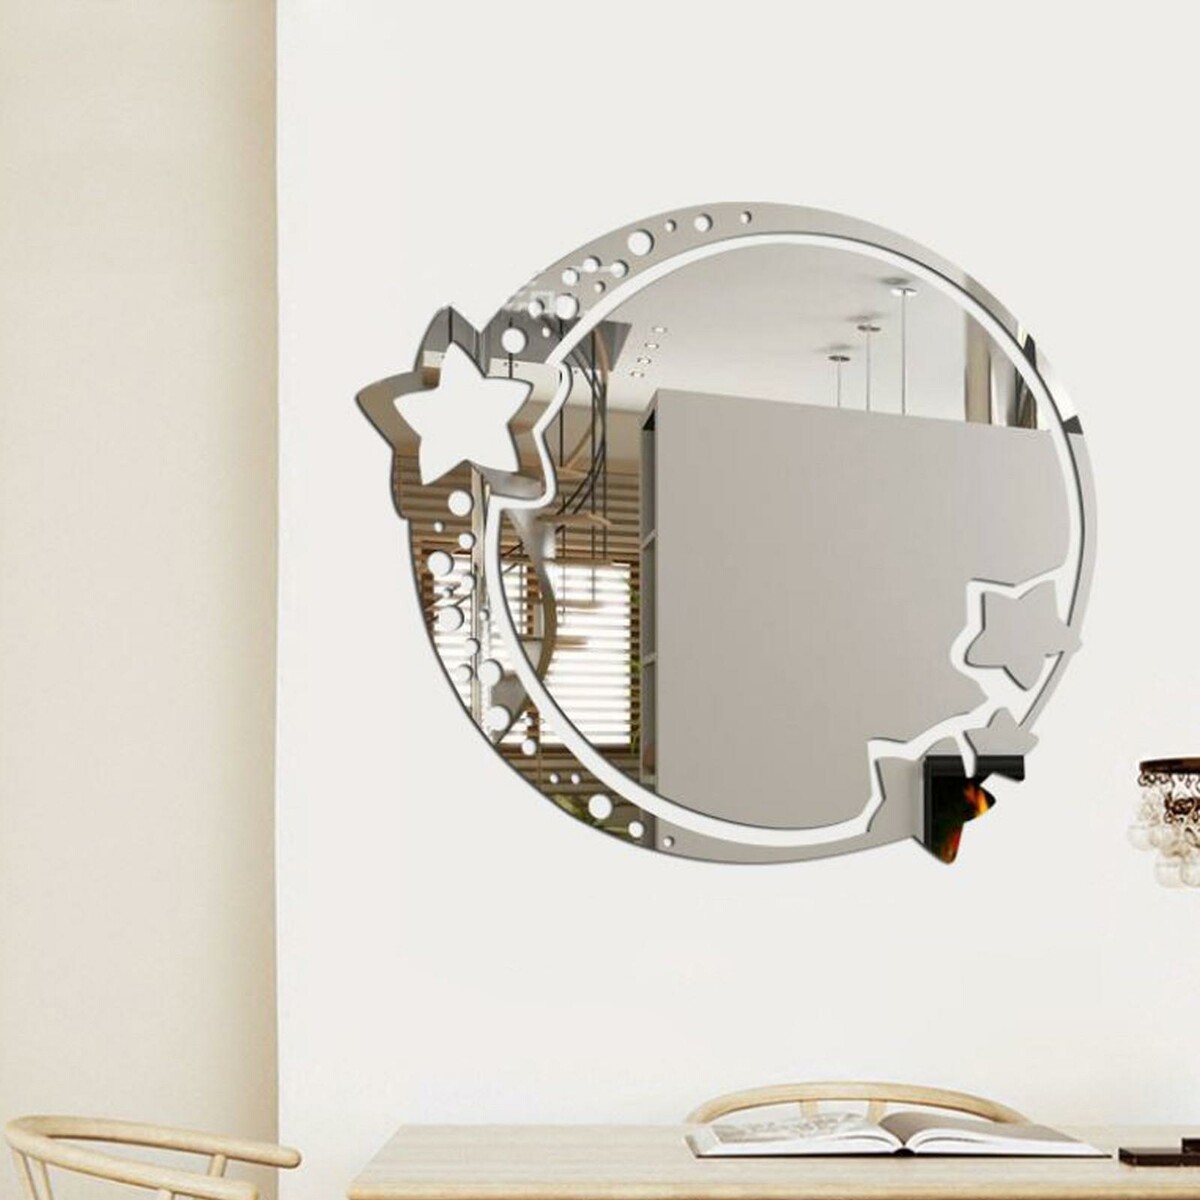 Зеркало настенное, наклейки интерьерные, зеркальные, декор на стену, панно 22 х 19 см панно наклейка настенное пробка